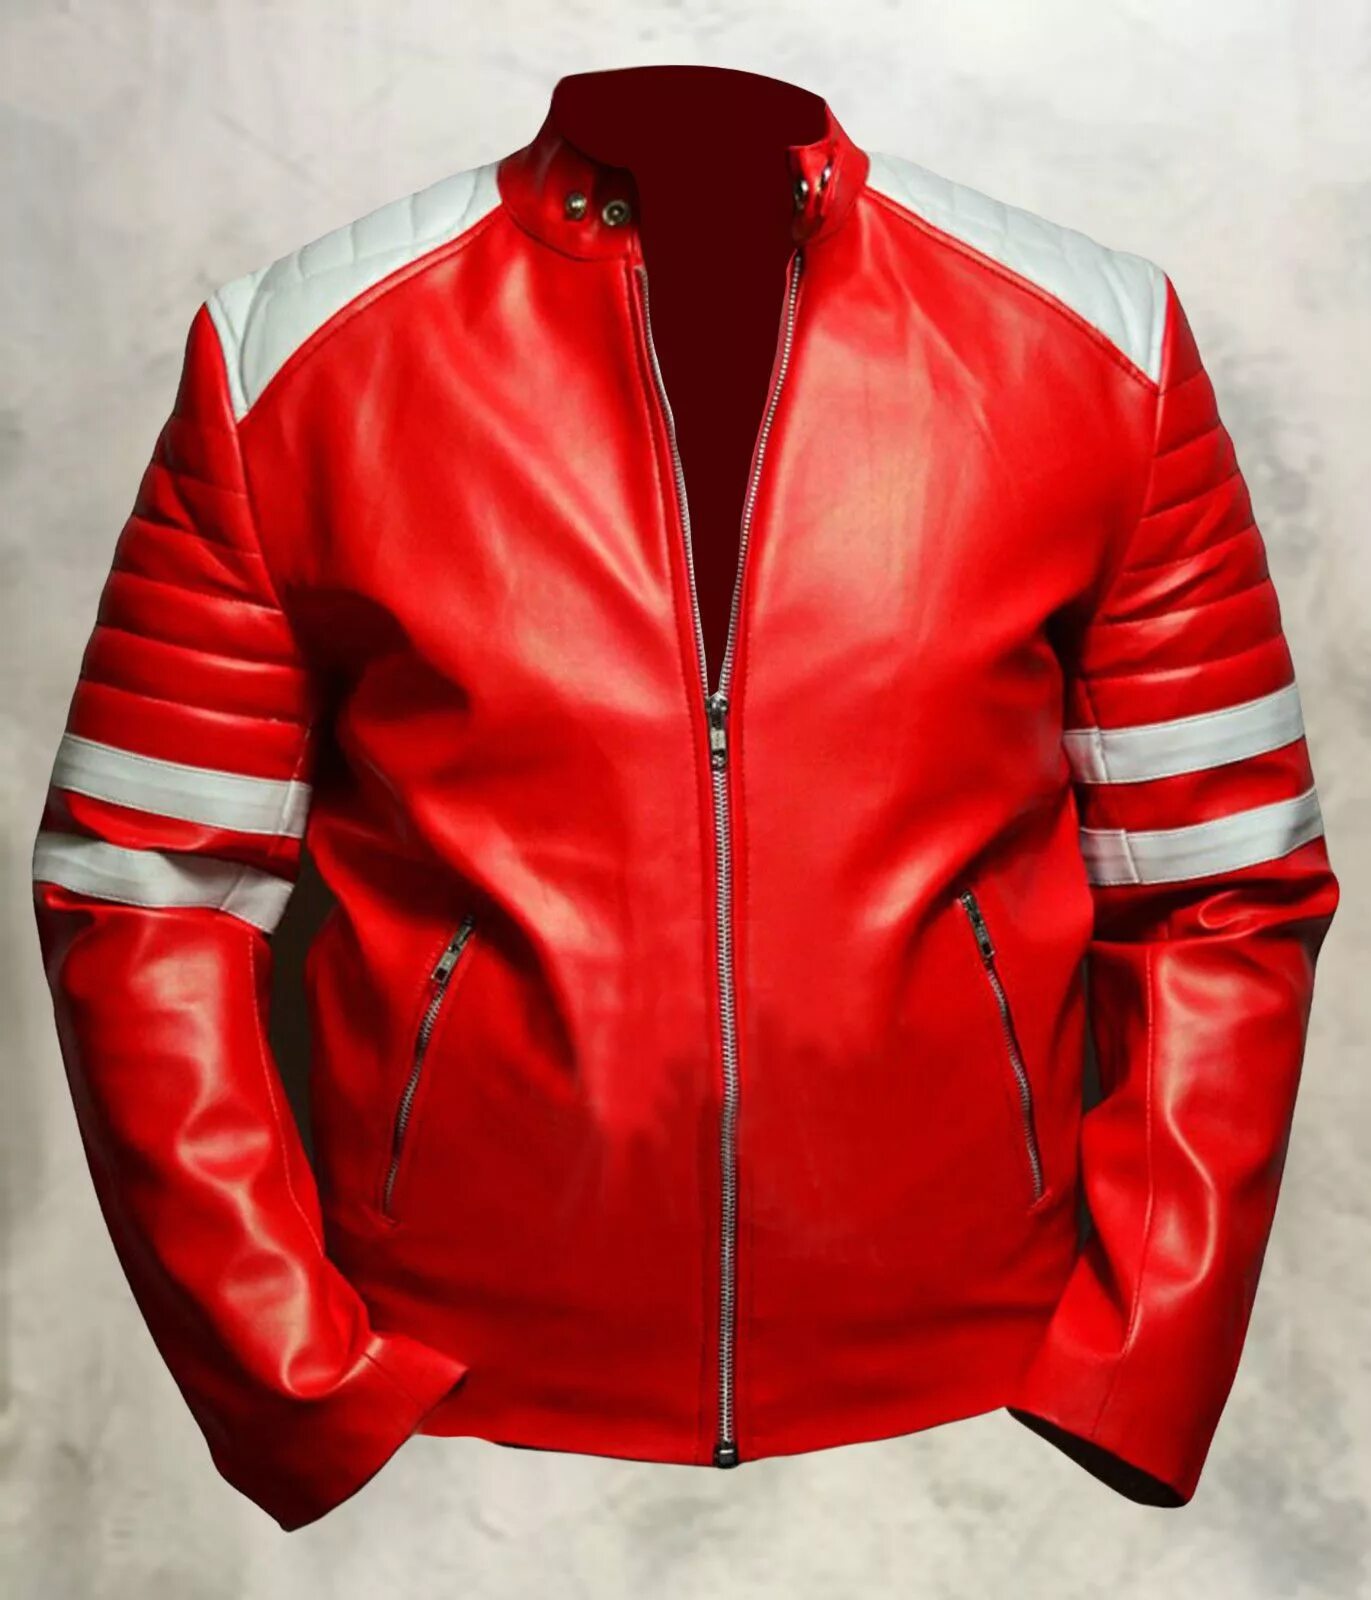 Одежда тайлера дердена. Красная кожаная куртка Тайлера Дердена. Кожаная куртка Тайлера Дердена.